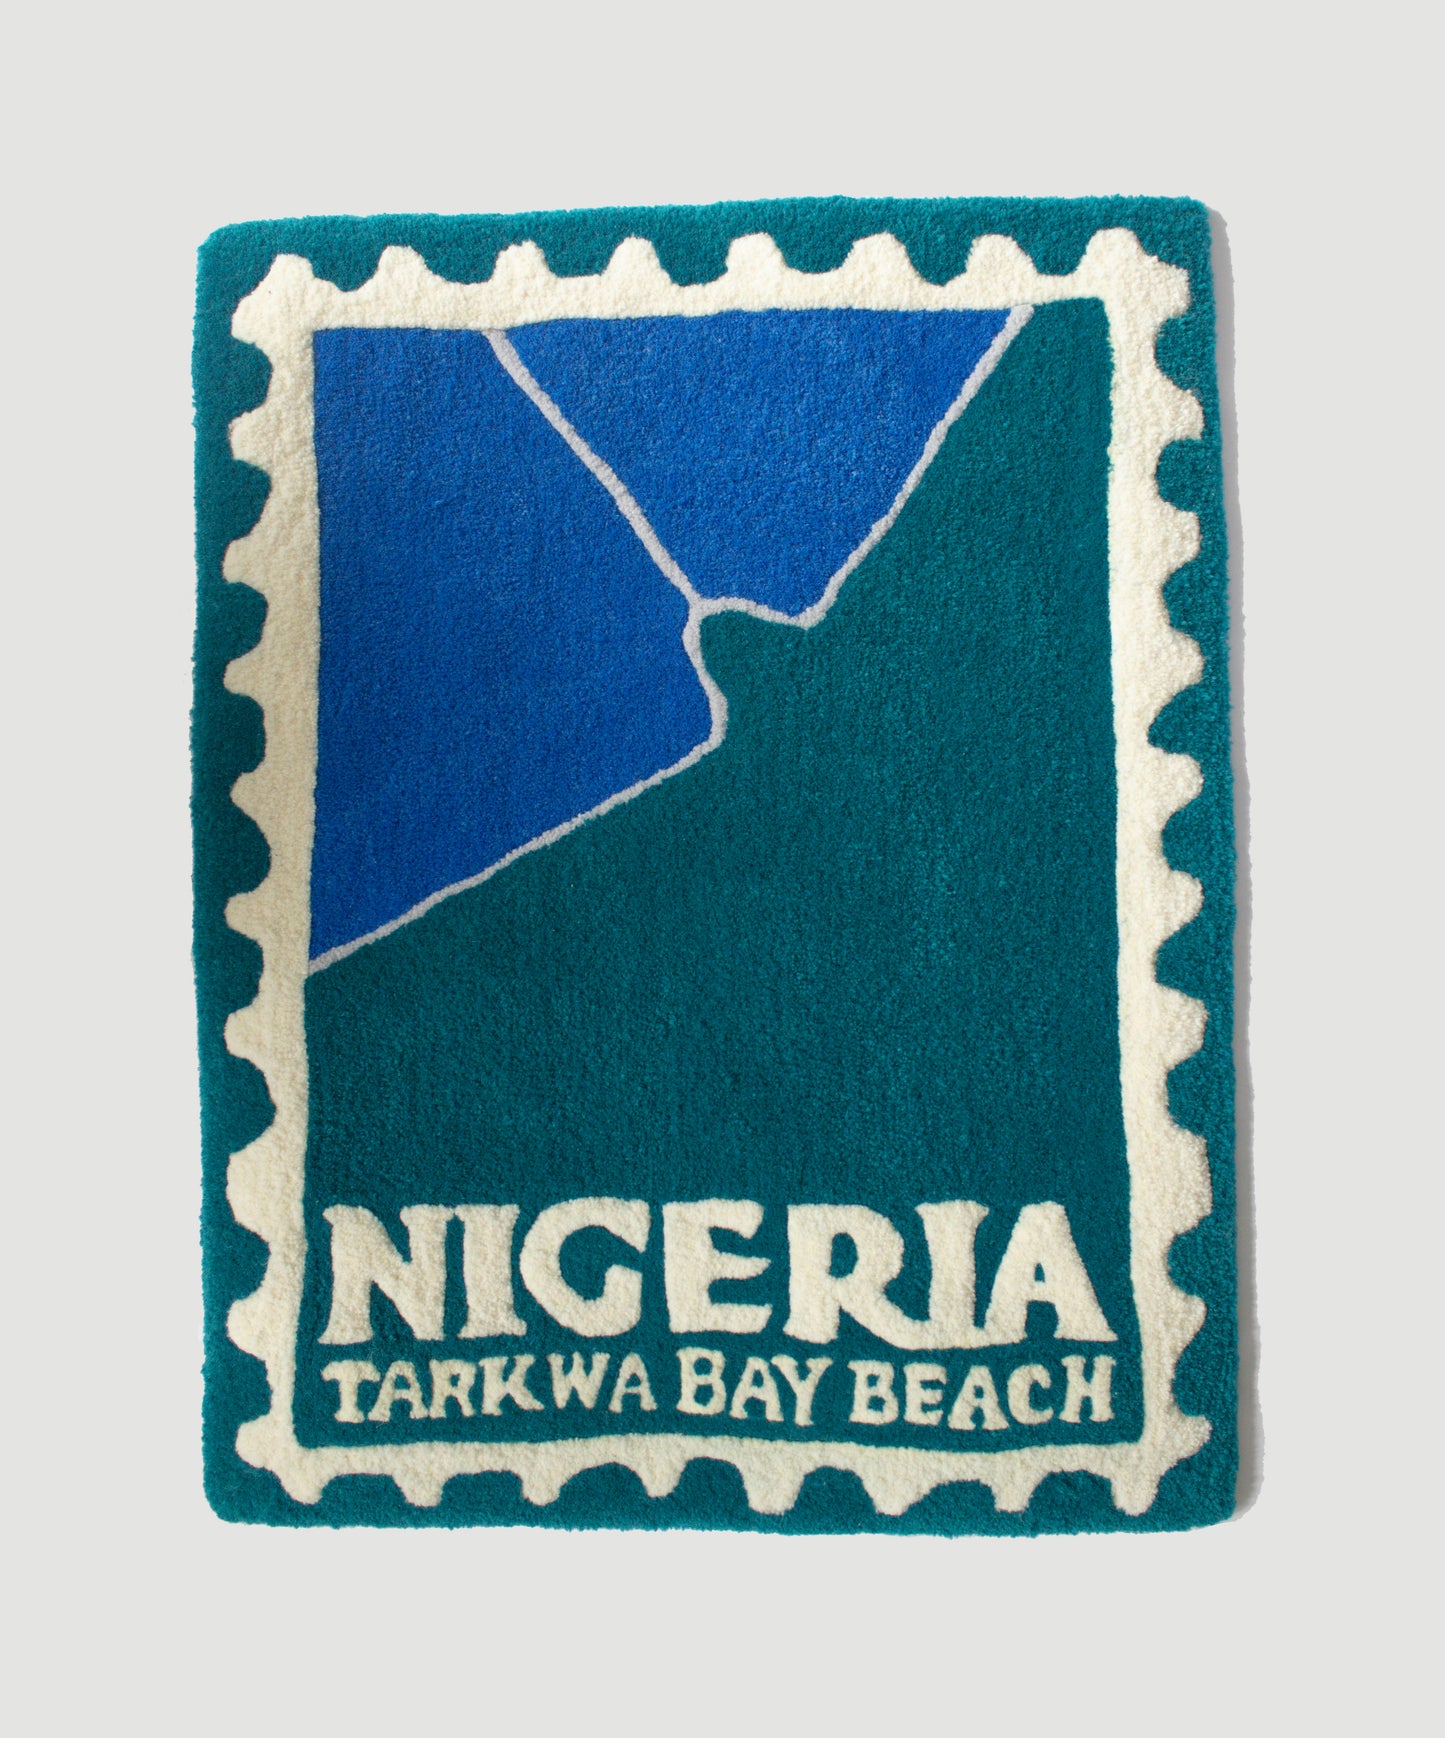 Tarkwa Bay Beach, Nigeria Stamp